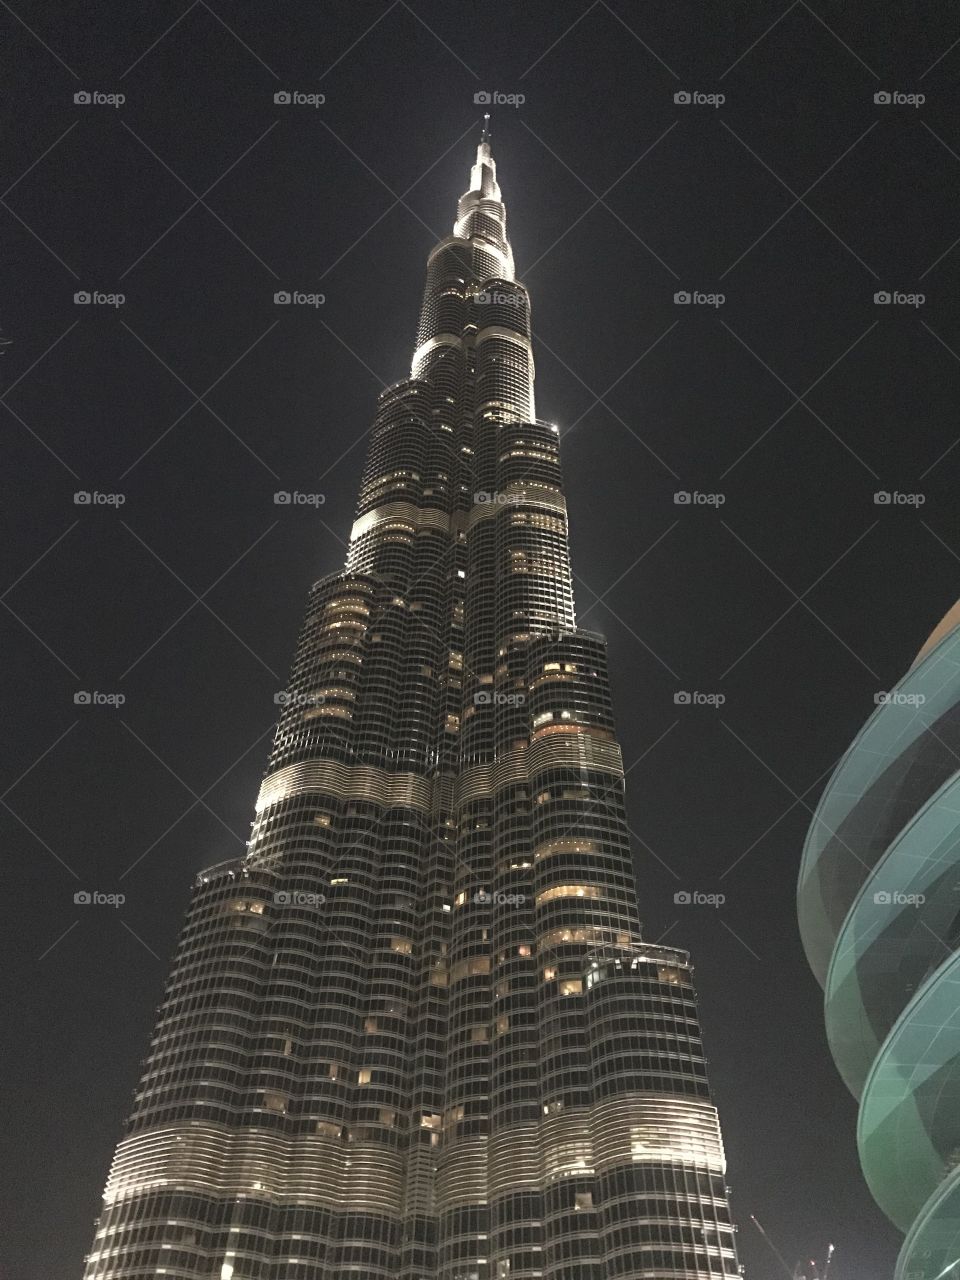 Burj Khalifa at its best